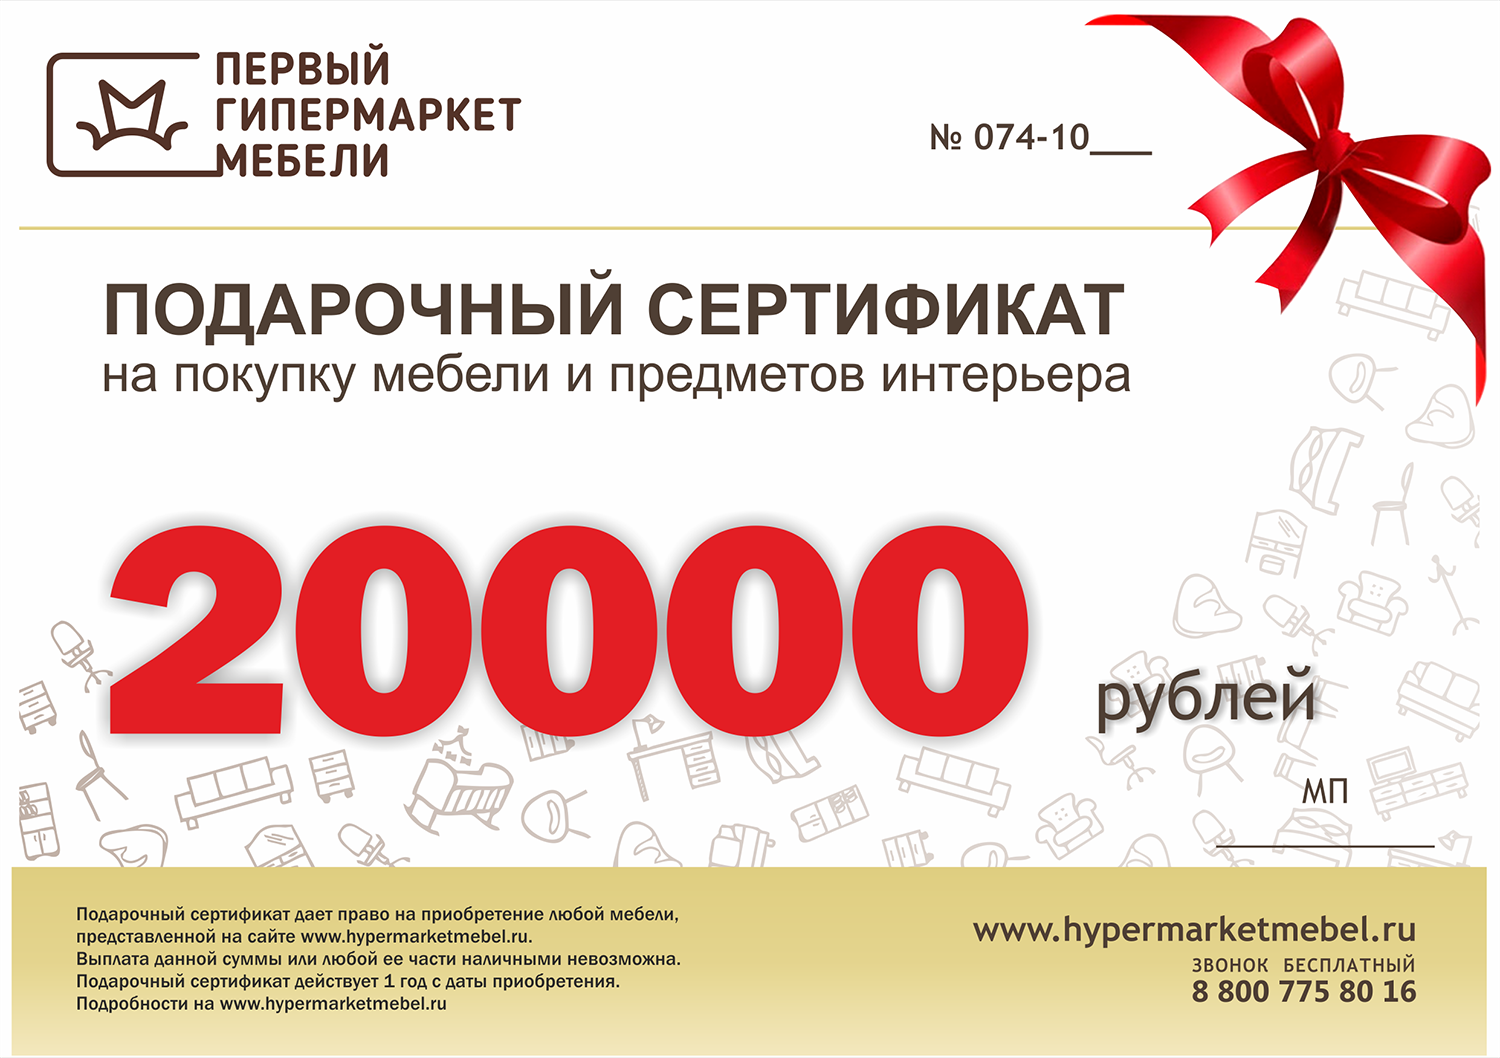 Подарочный сертификат мебельного магазина. Podarocnyy sertifikat. Подарочный серитифика. Подарочный купон. Сертификат на приобретение жилого помещения